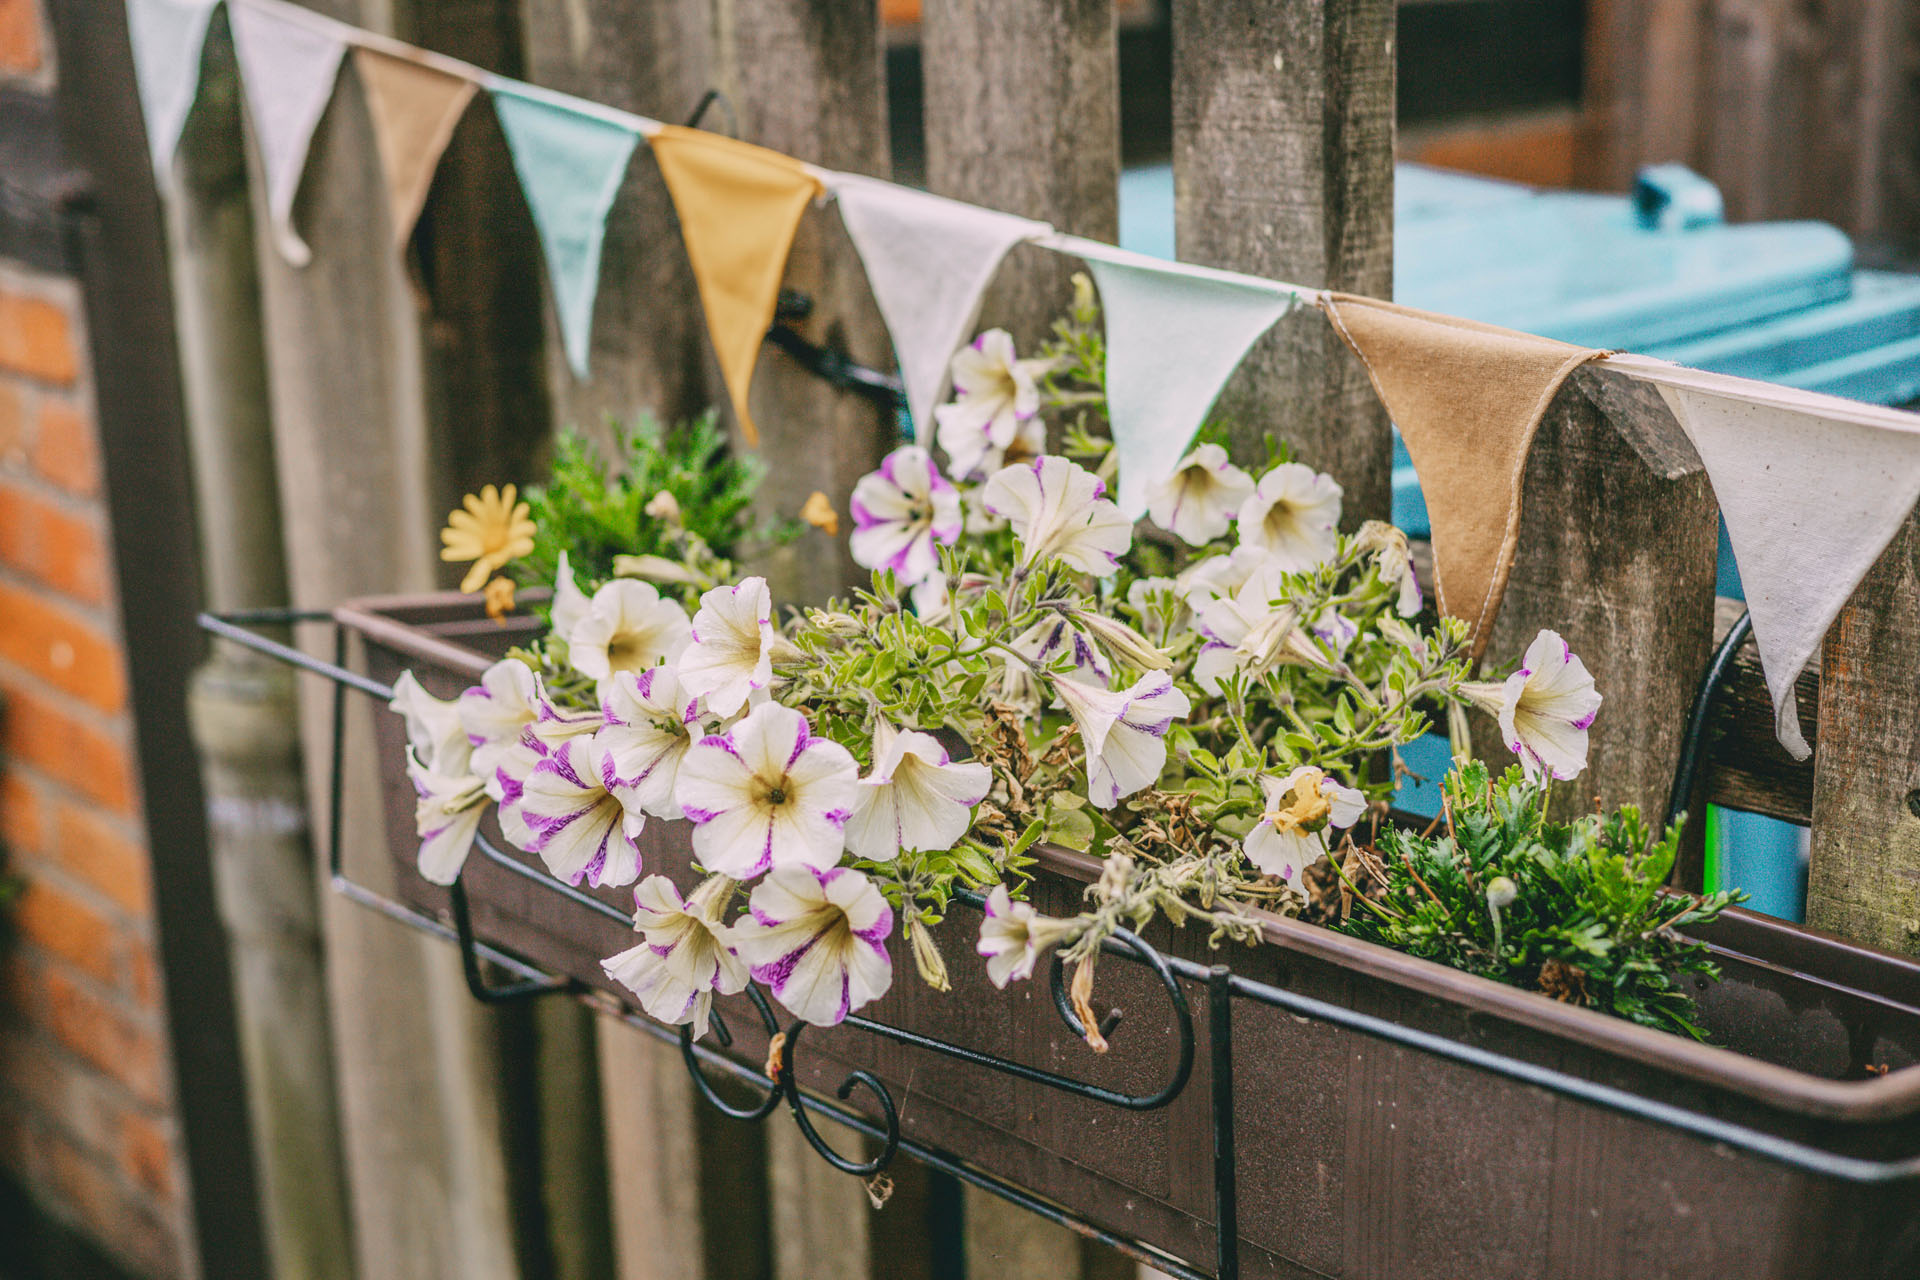 Zaun in Bad Oldesloe mit Blumenkästen und Wimpeln